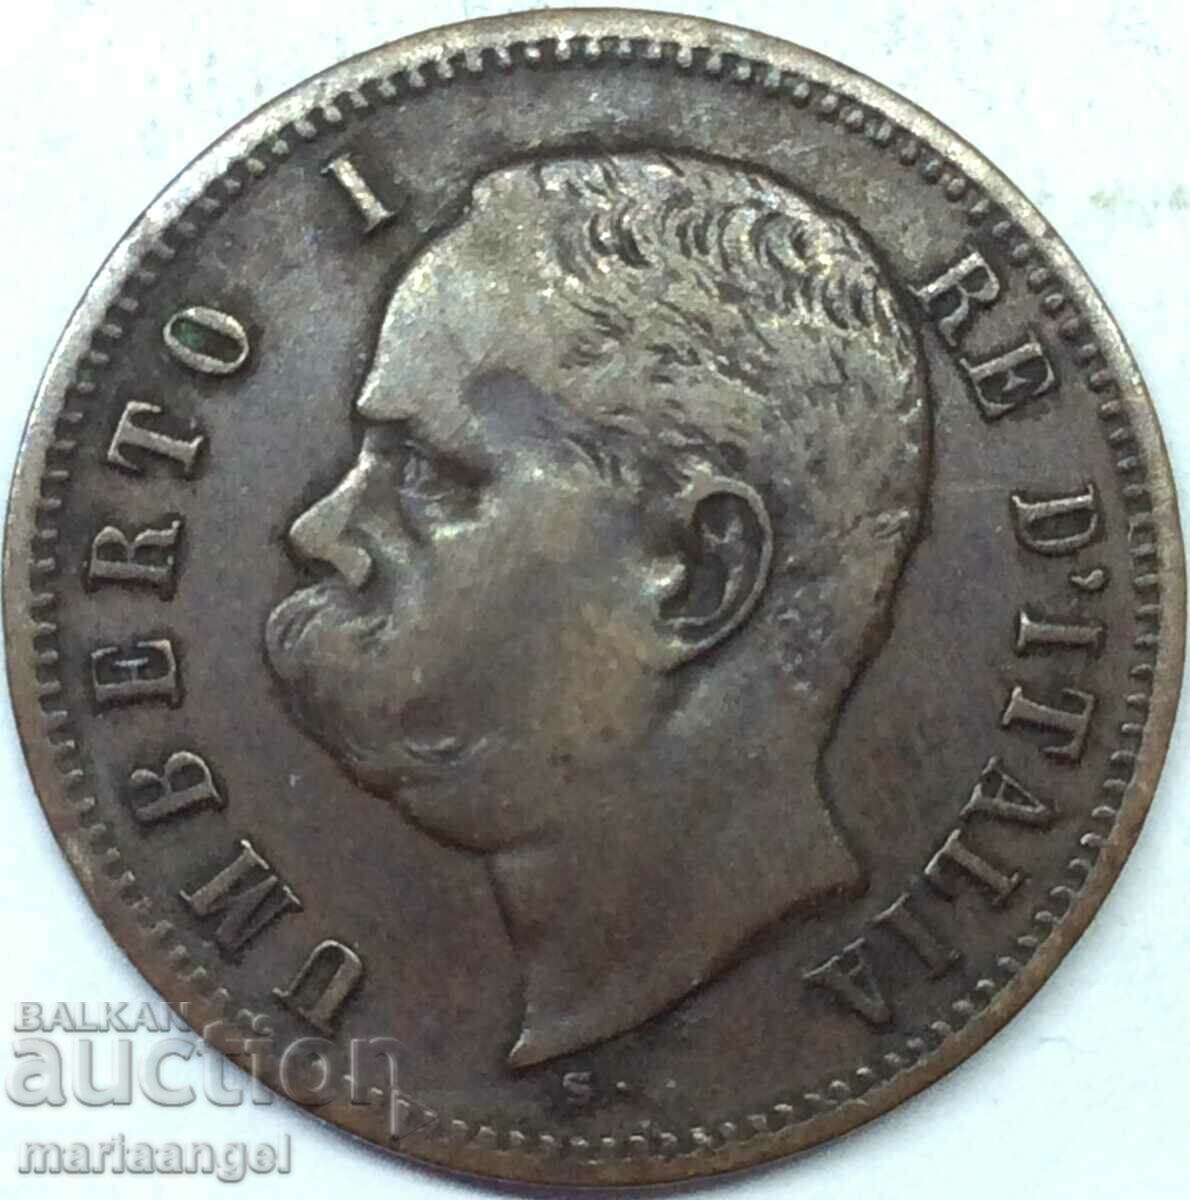 Italy 2 centesimi 1900 Umberto I 6